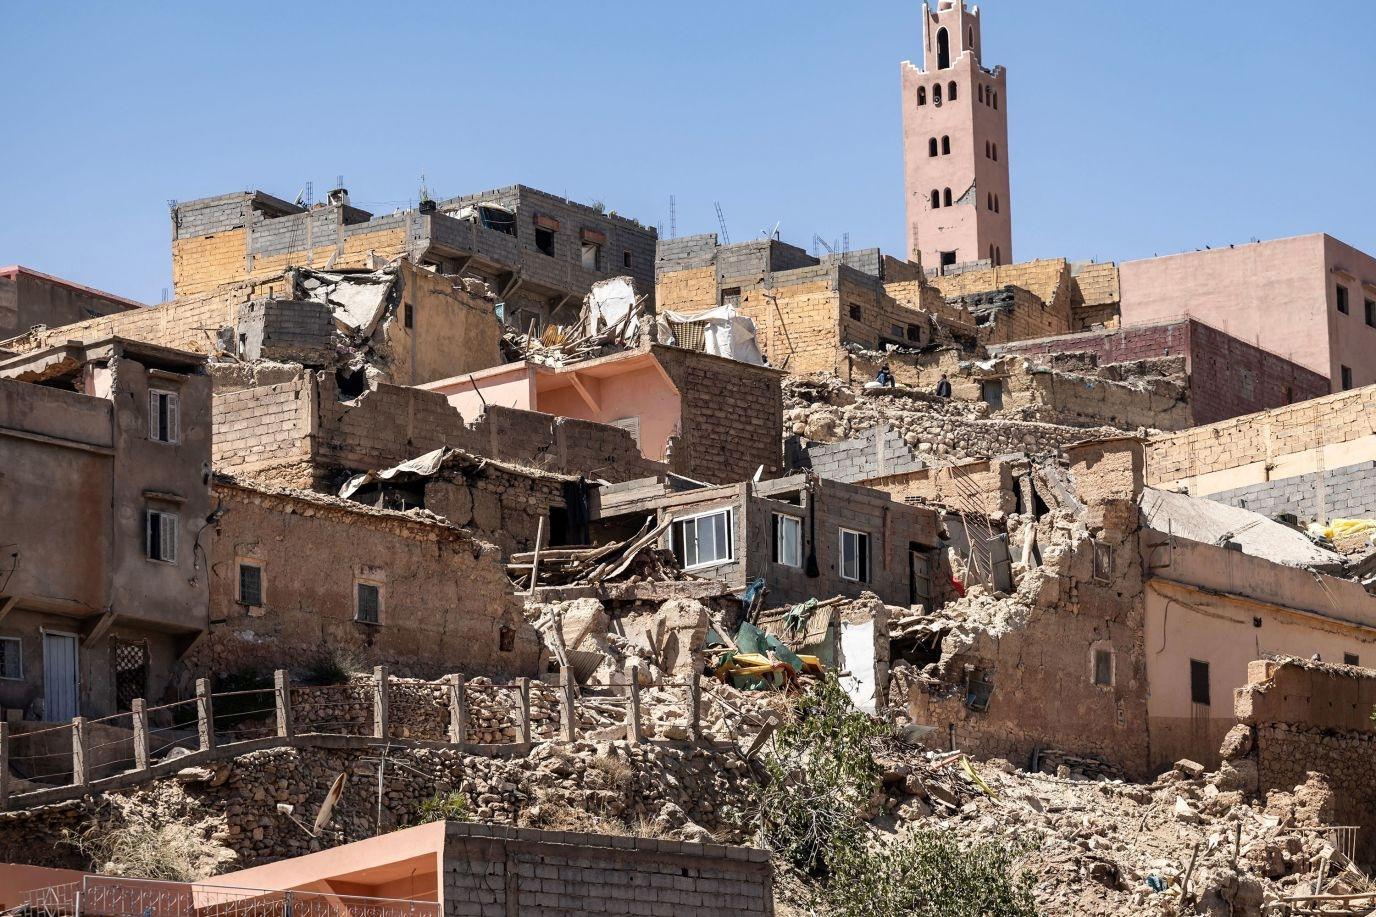 Maroc bắt đầu để tang toàn quốc, nỗ lực tìm kiếm người sống sót sau động đất